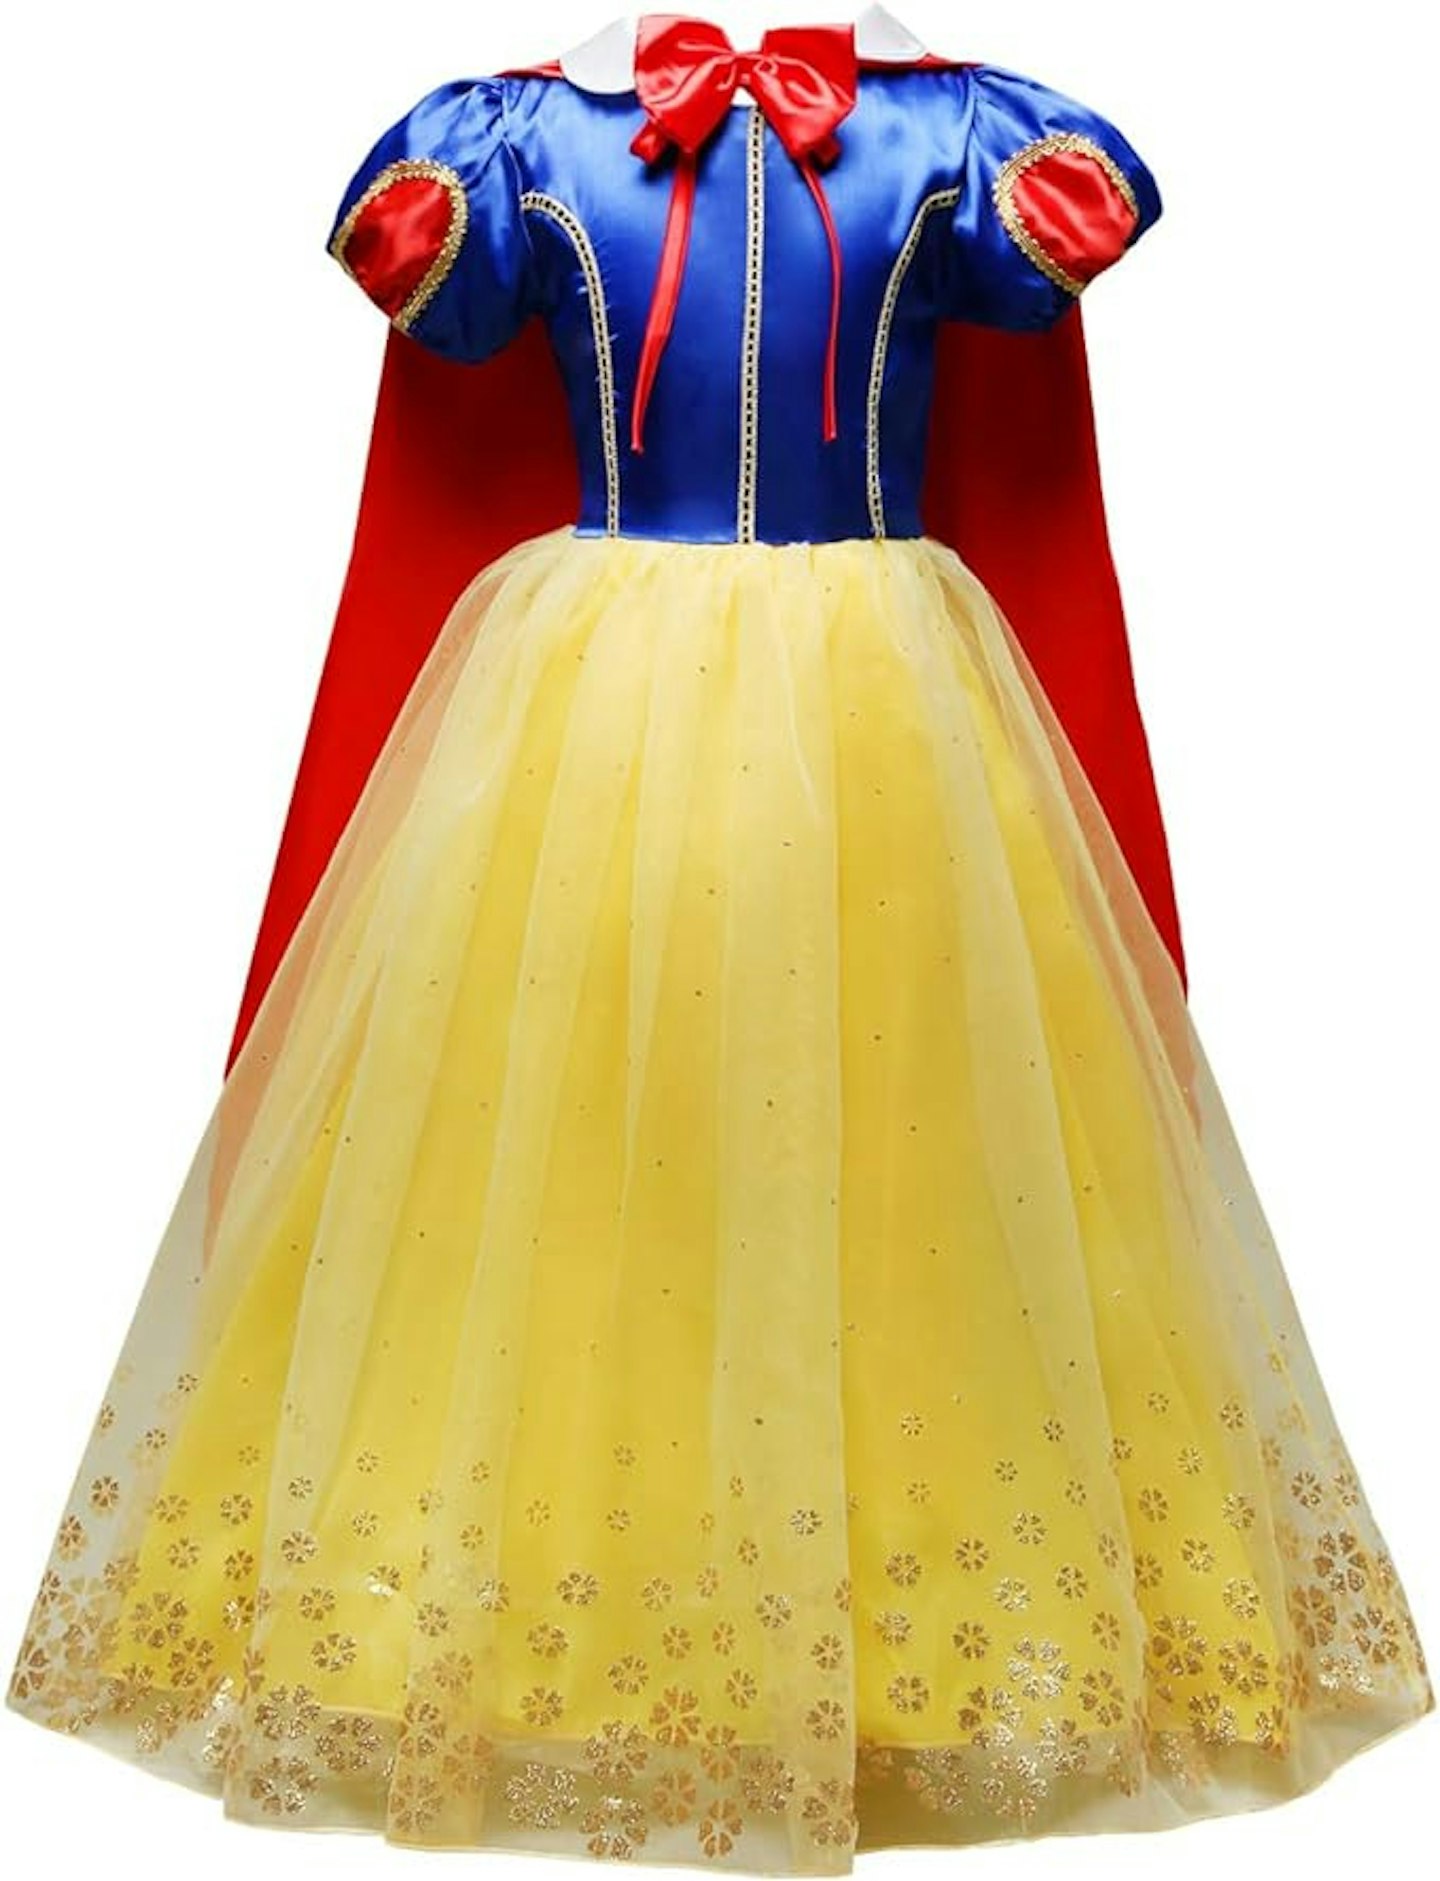 Snow White halloween costume 